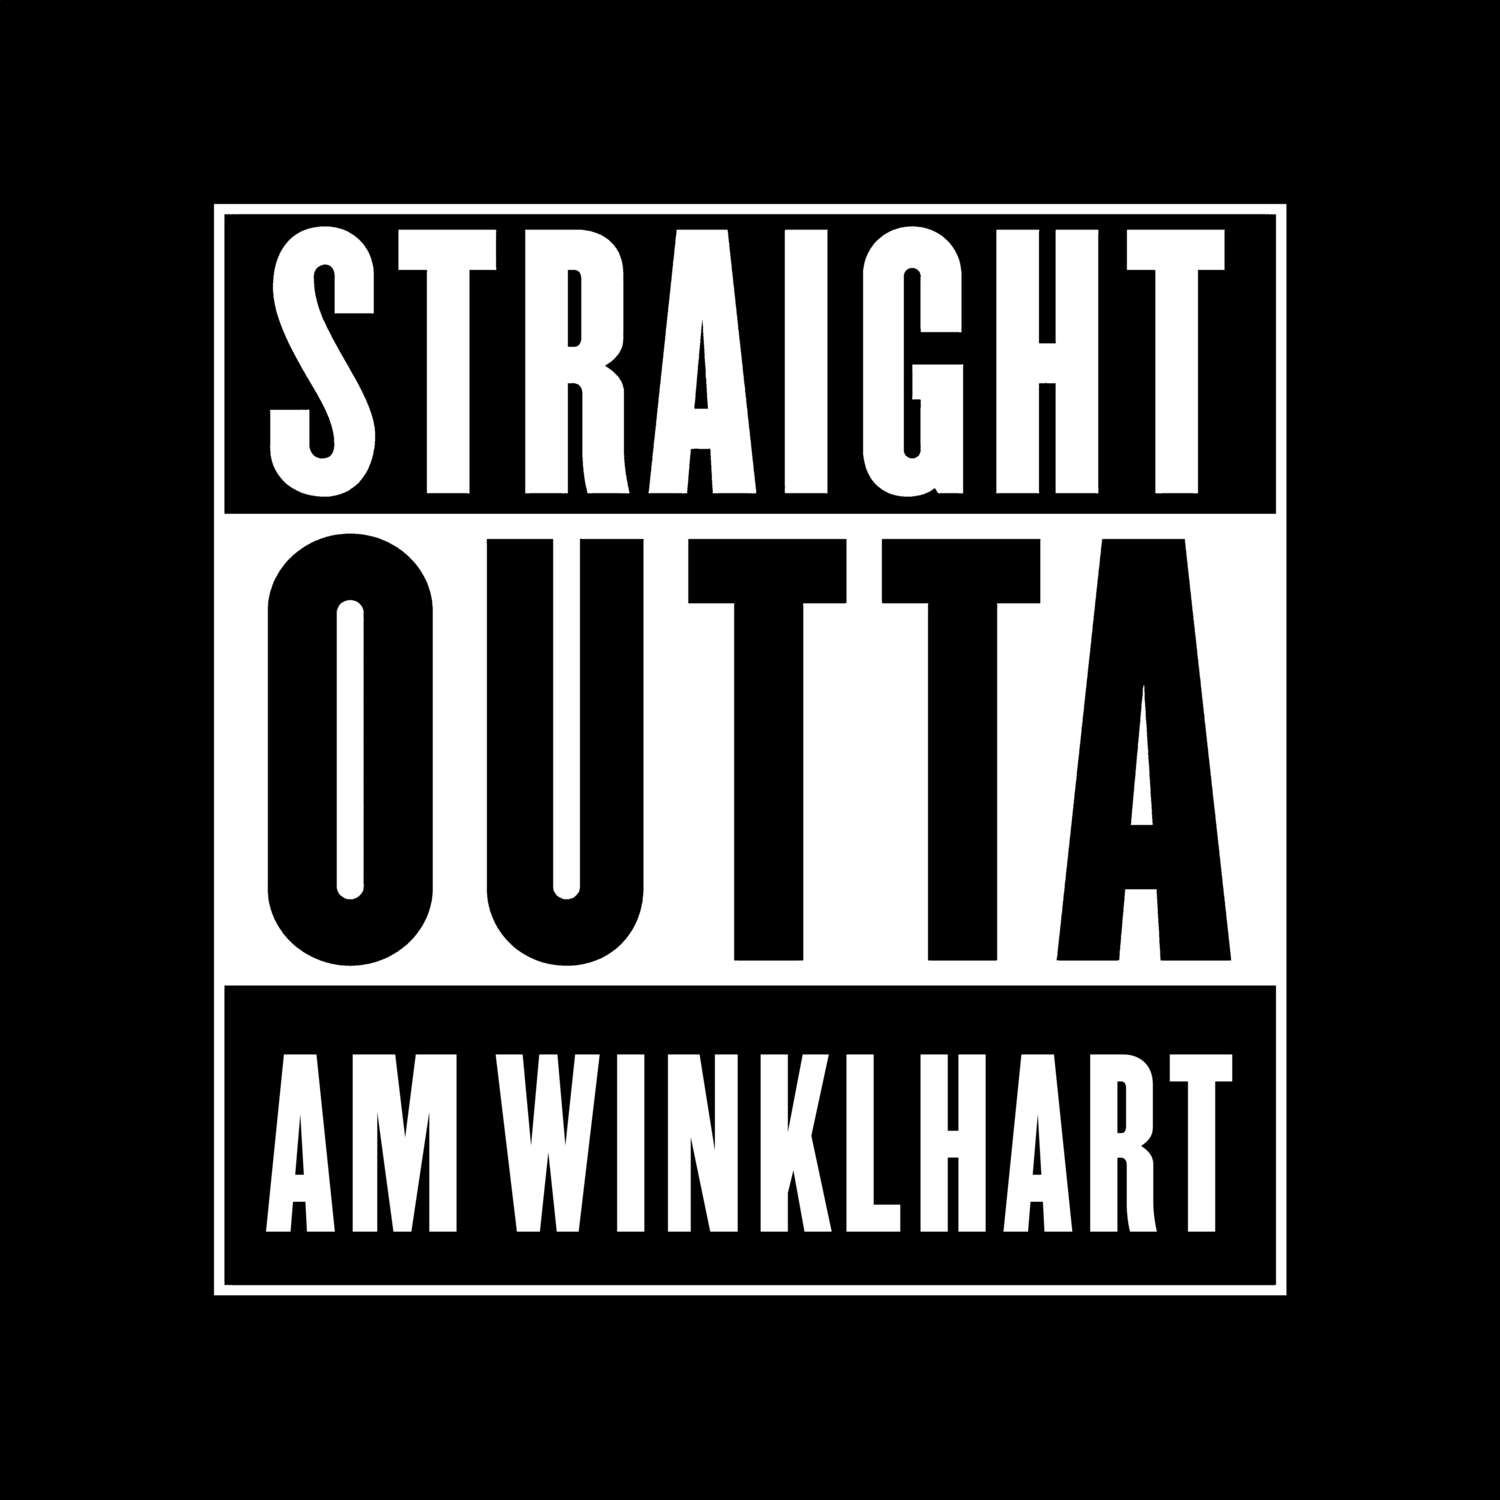 Am Winklhart T-Shirt »Straight Outta«